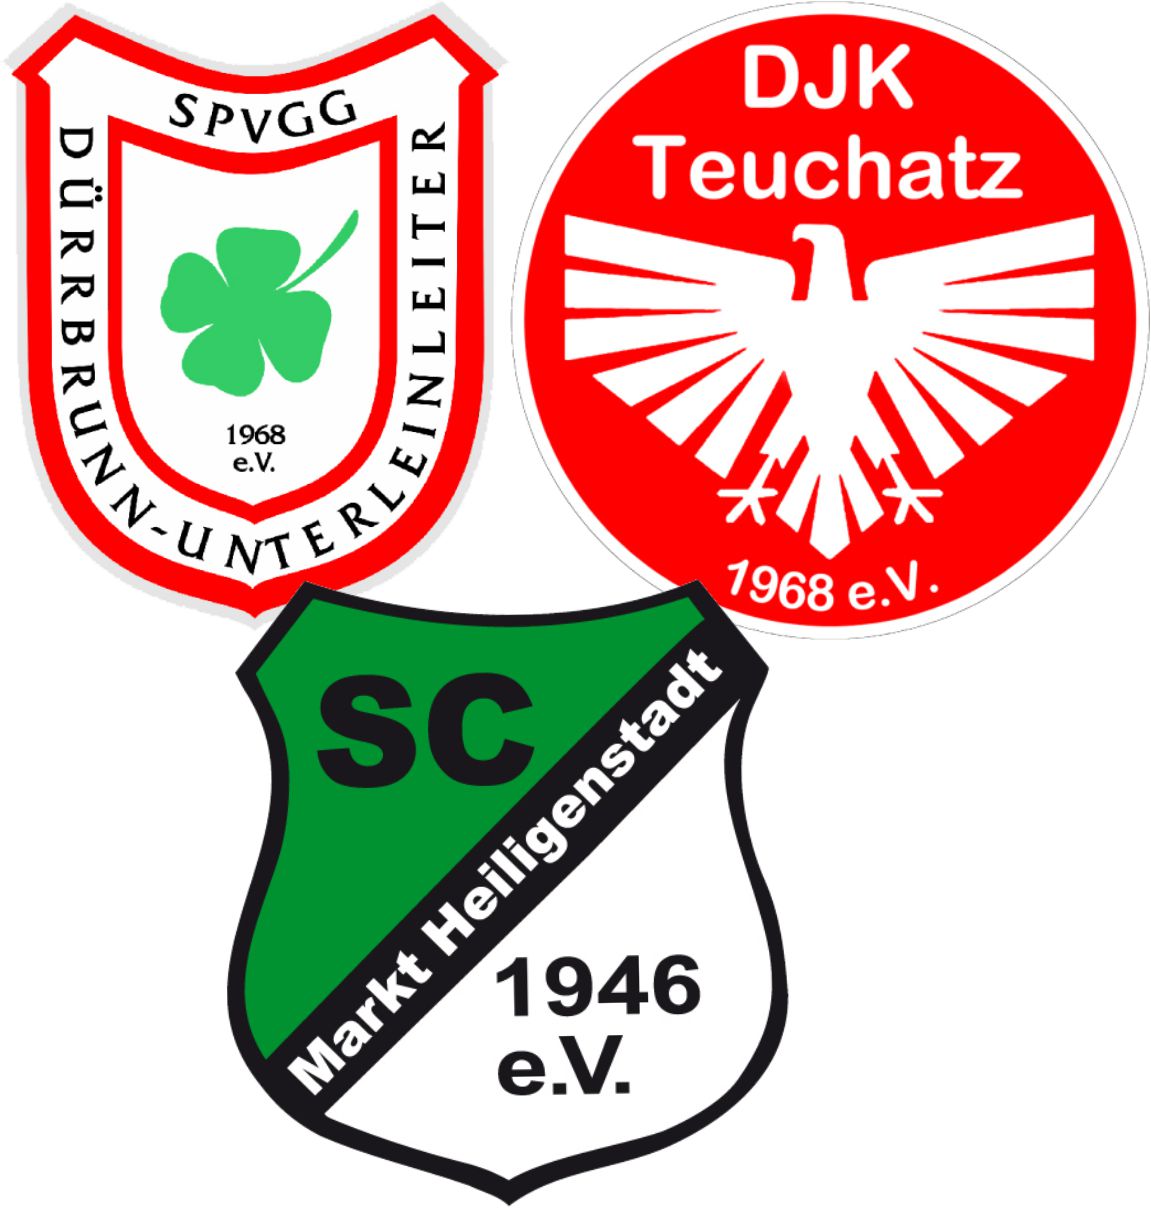 SpVgg/DJK/SCH Logo